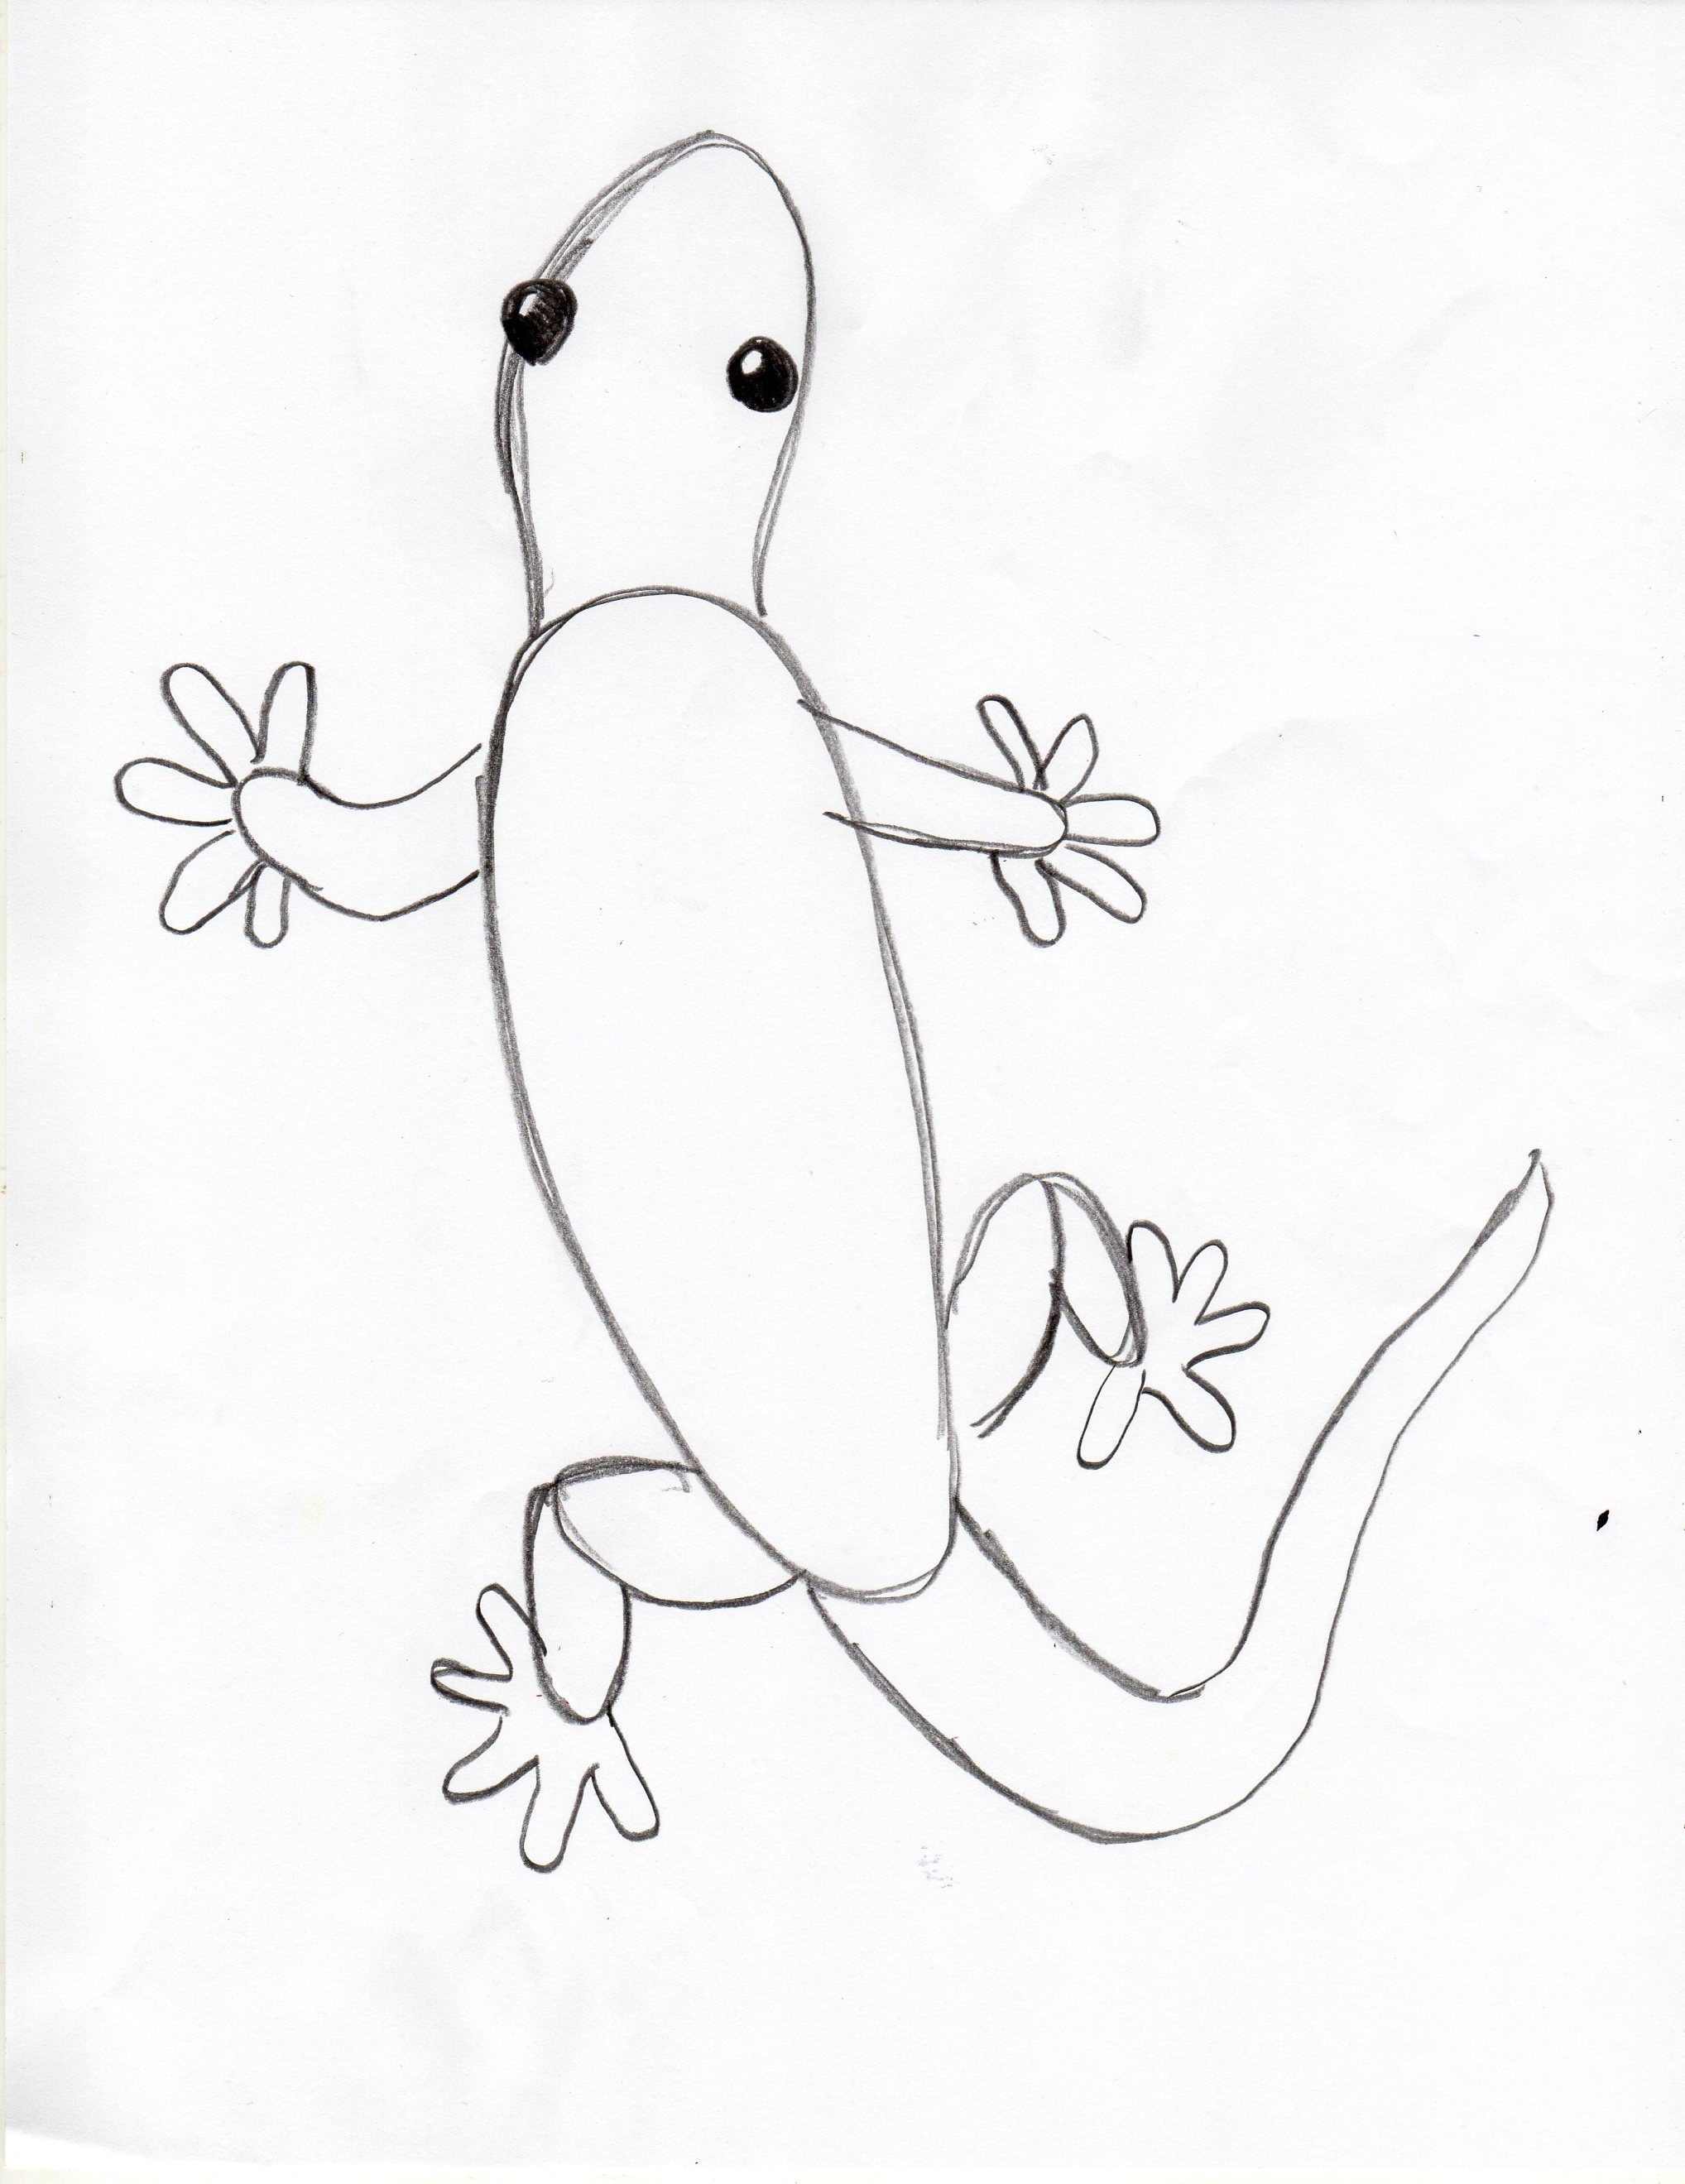 Как нарисовать ящерицу быстро. Рисуем сложное тело животного очень просто - Ravlyk